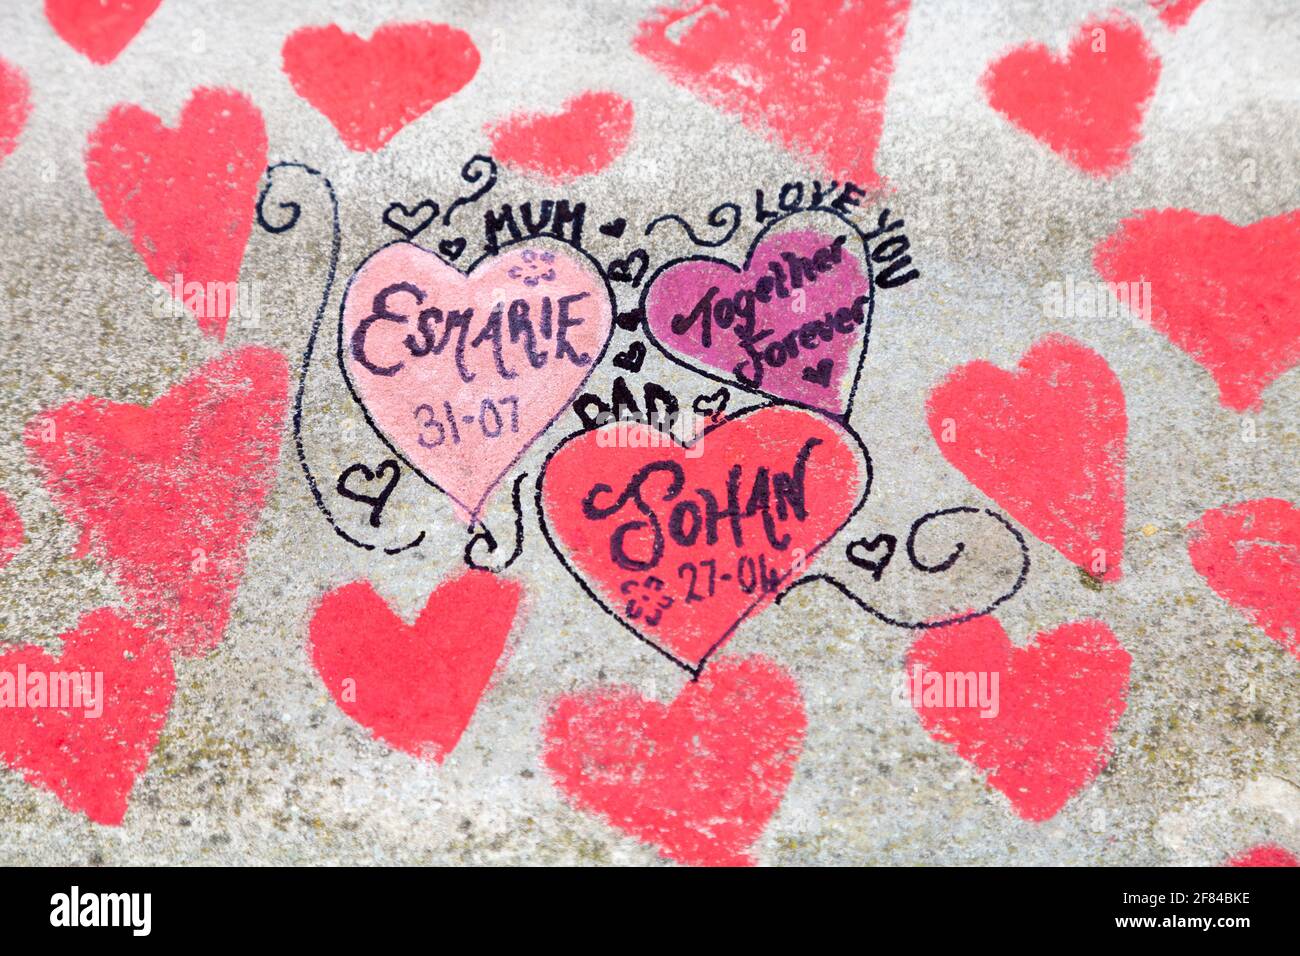 11 de abril de 2021, Londres, Reino Unido - Corazones dibujados en el Muro Conmemorativo Nacional COVID a lo largo de la Ribera del Sur como tributo a quienes murieron durante la pandemia del coronavirus Foto de stock